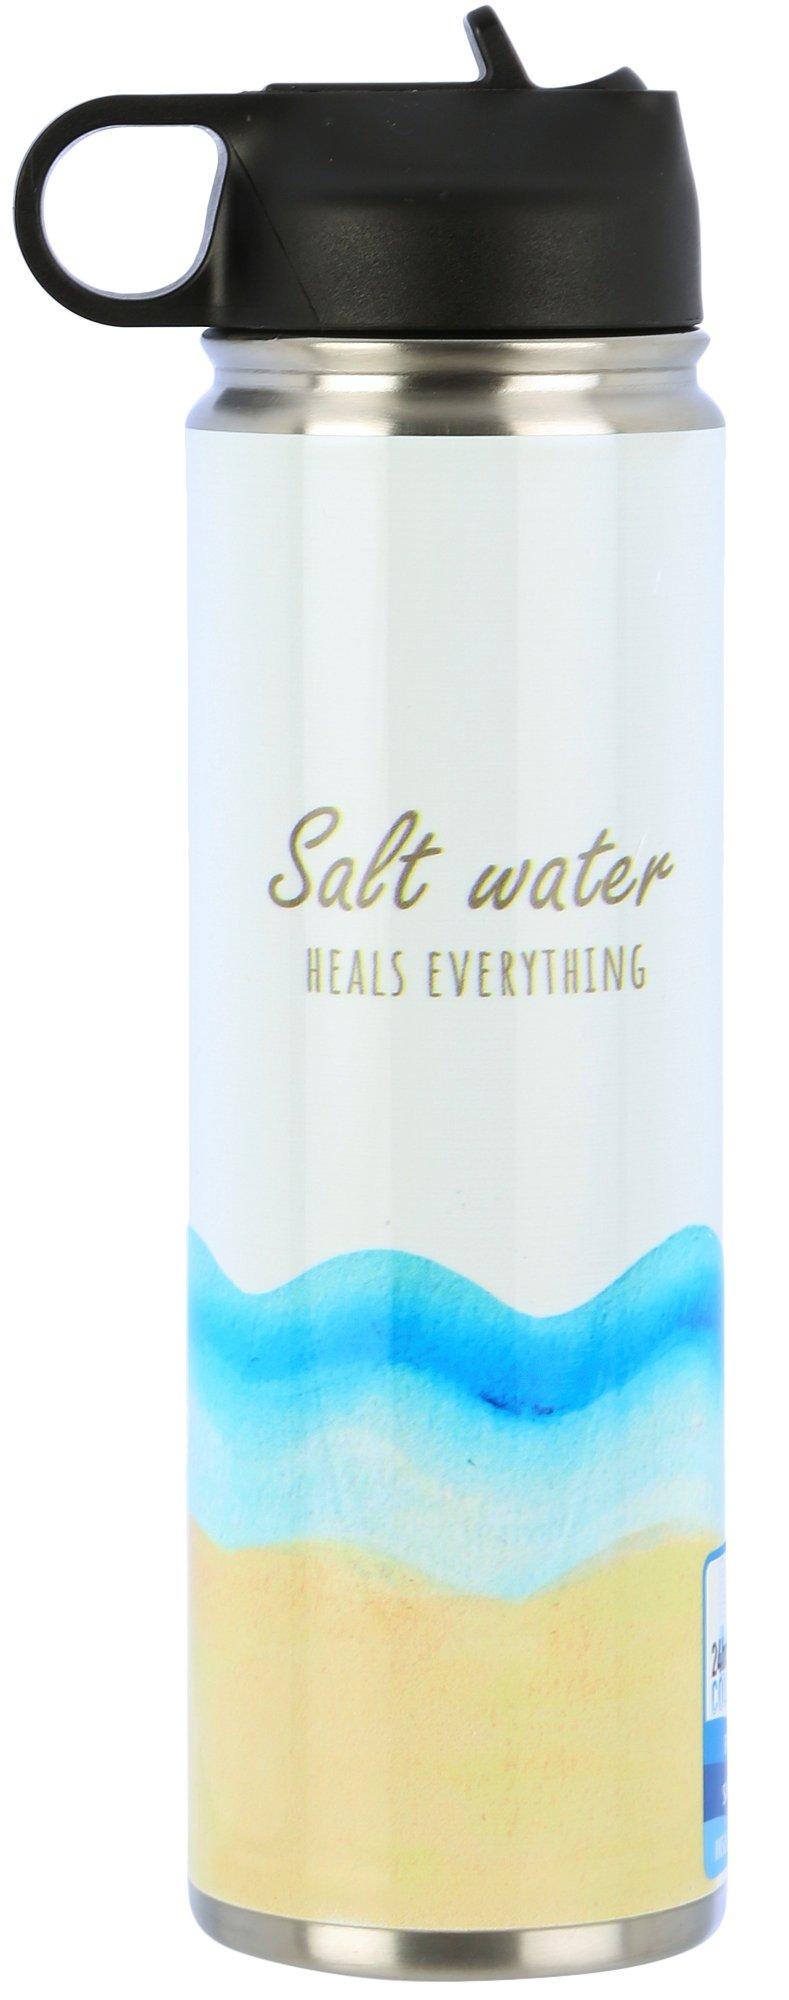 22 oz. Salt Water Heals Everything Water Bottle